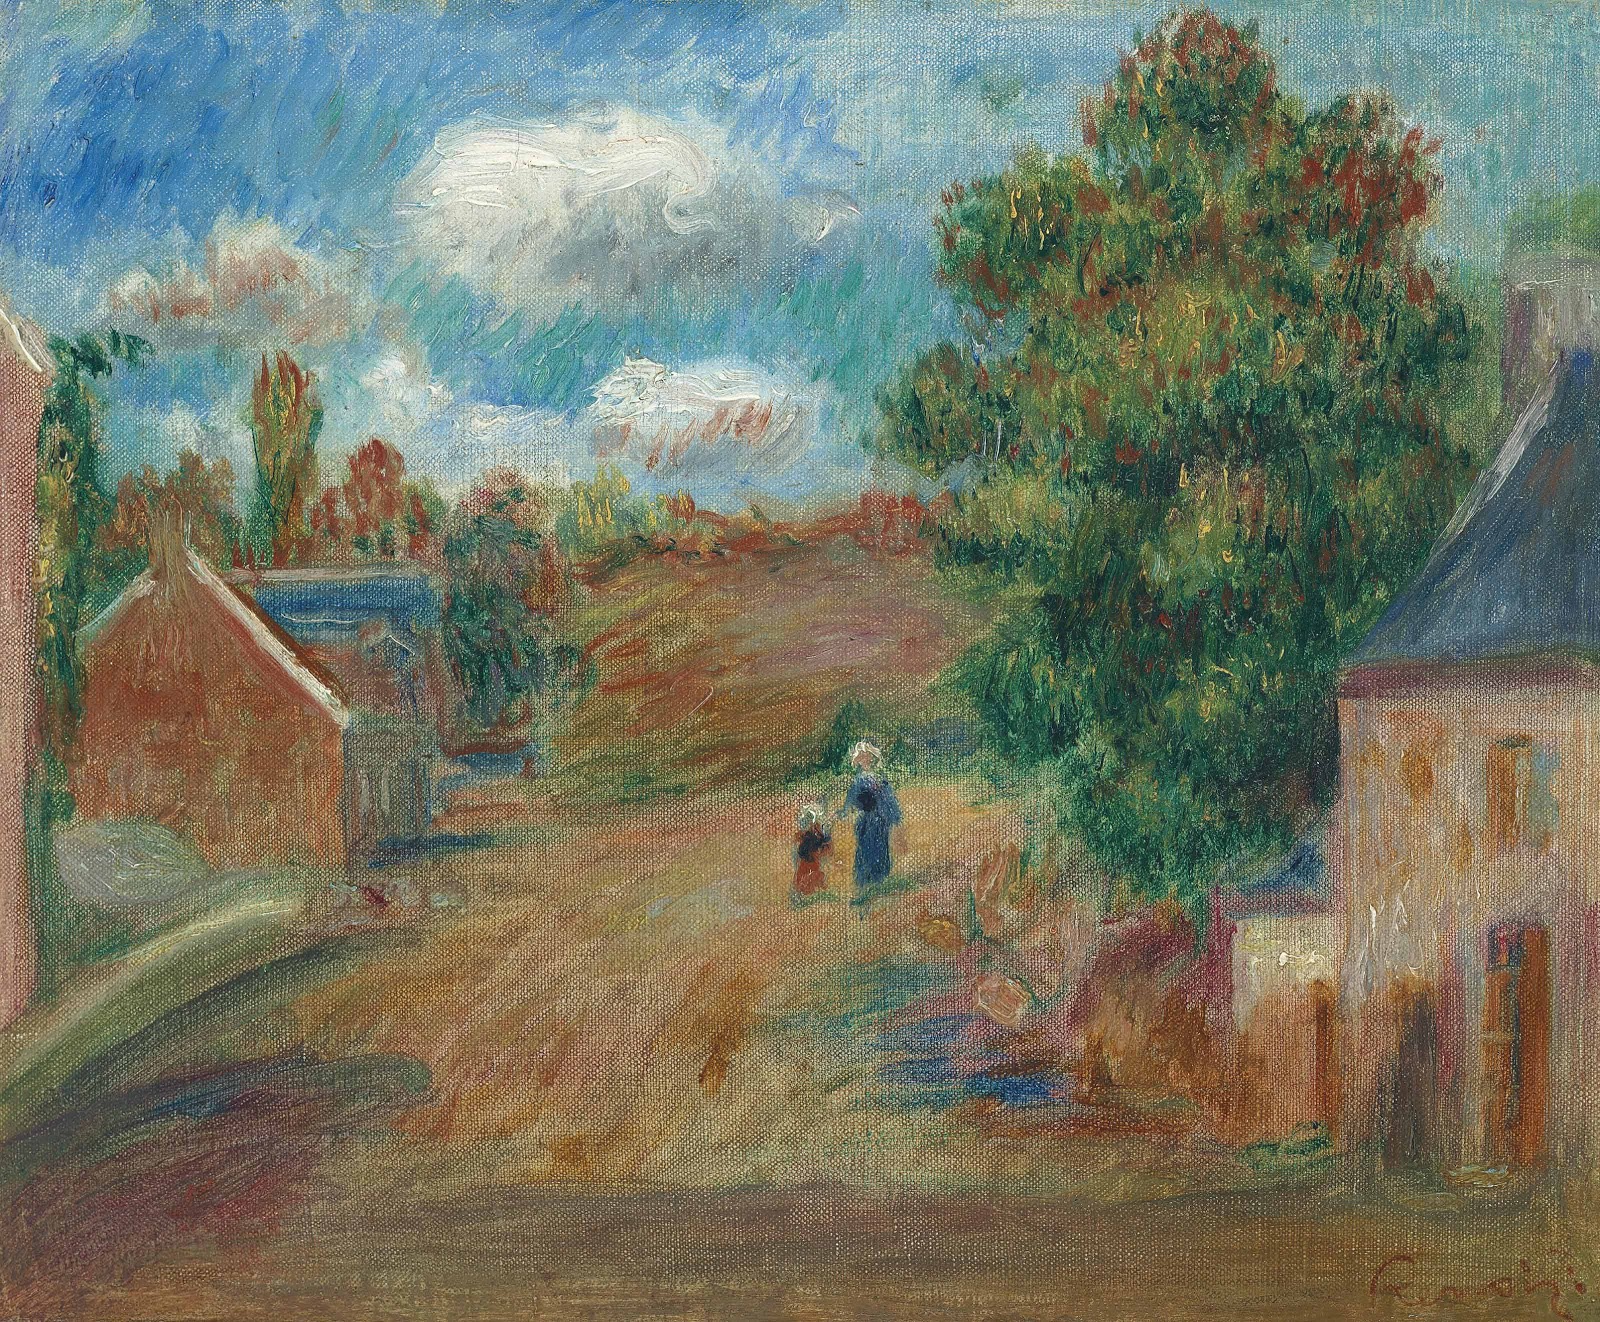 Pierre+Auguste+Renoir-1841-1-19 (846).jpg